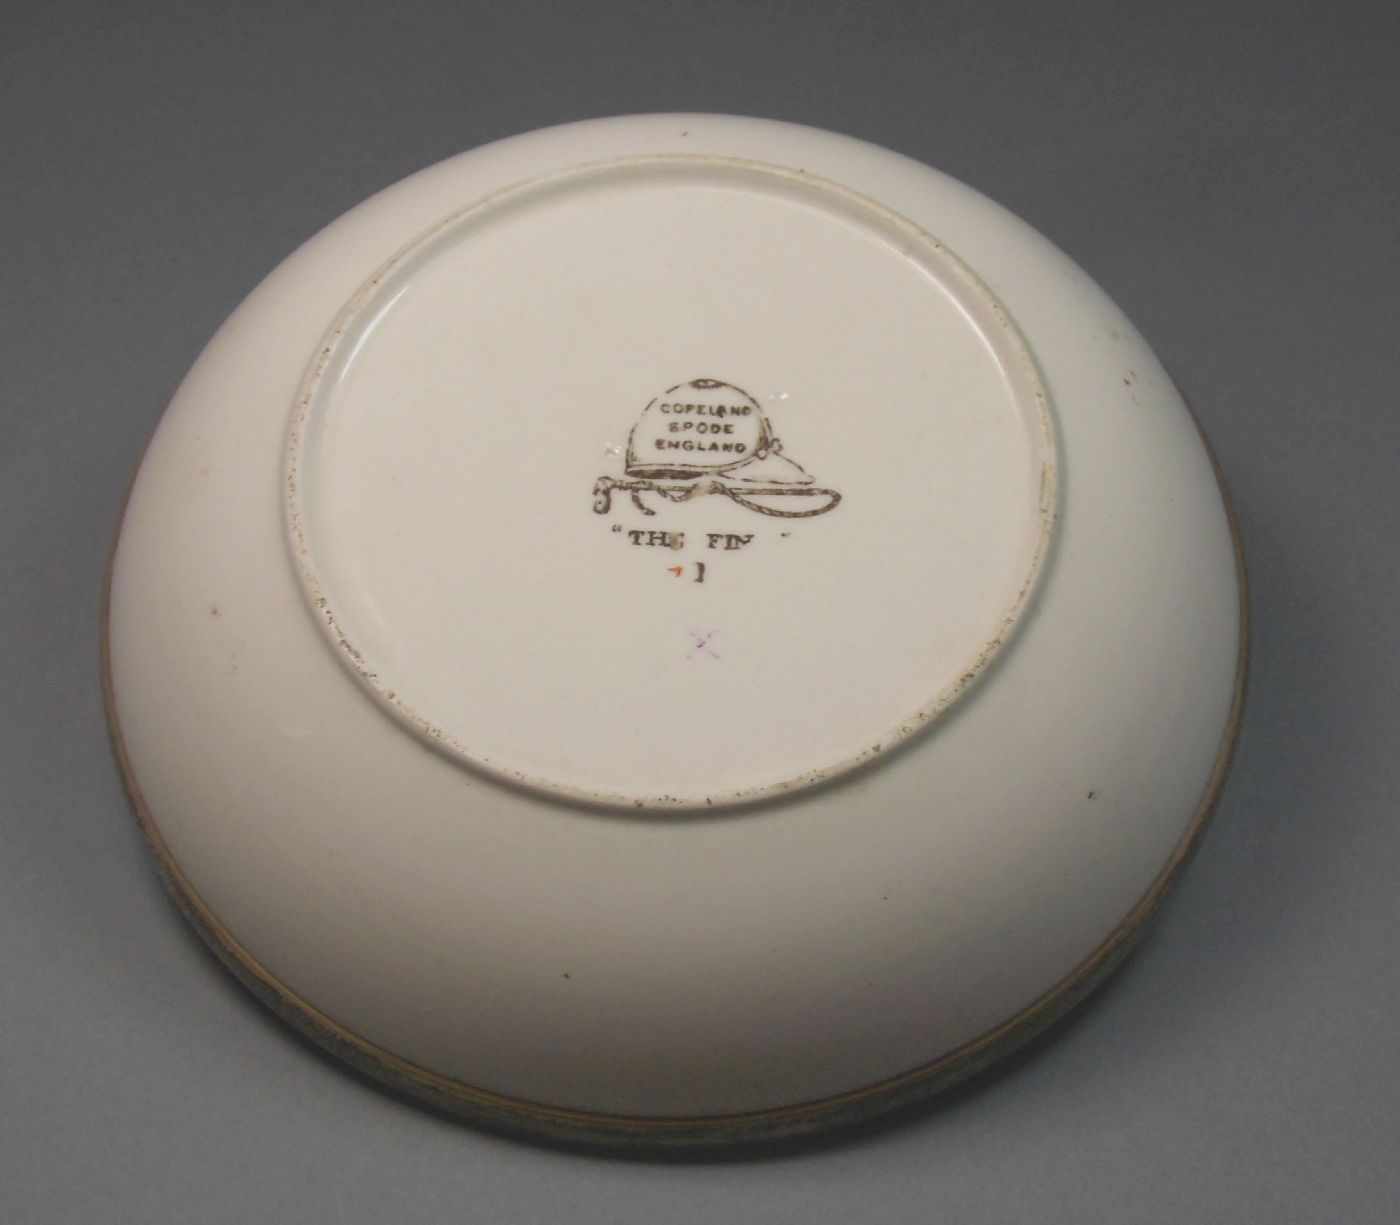 KLEINE SCHALE / GEBÄCKSCHALE / little bowl, Keramik mit Silbermontur (925er Silber), - Bild 2 aus 3